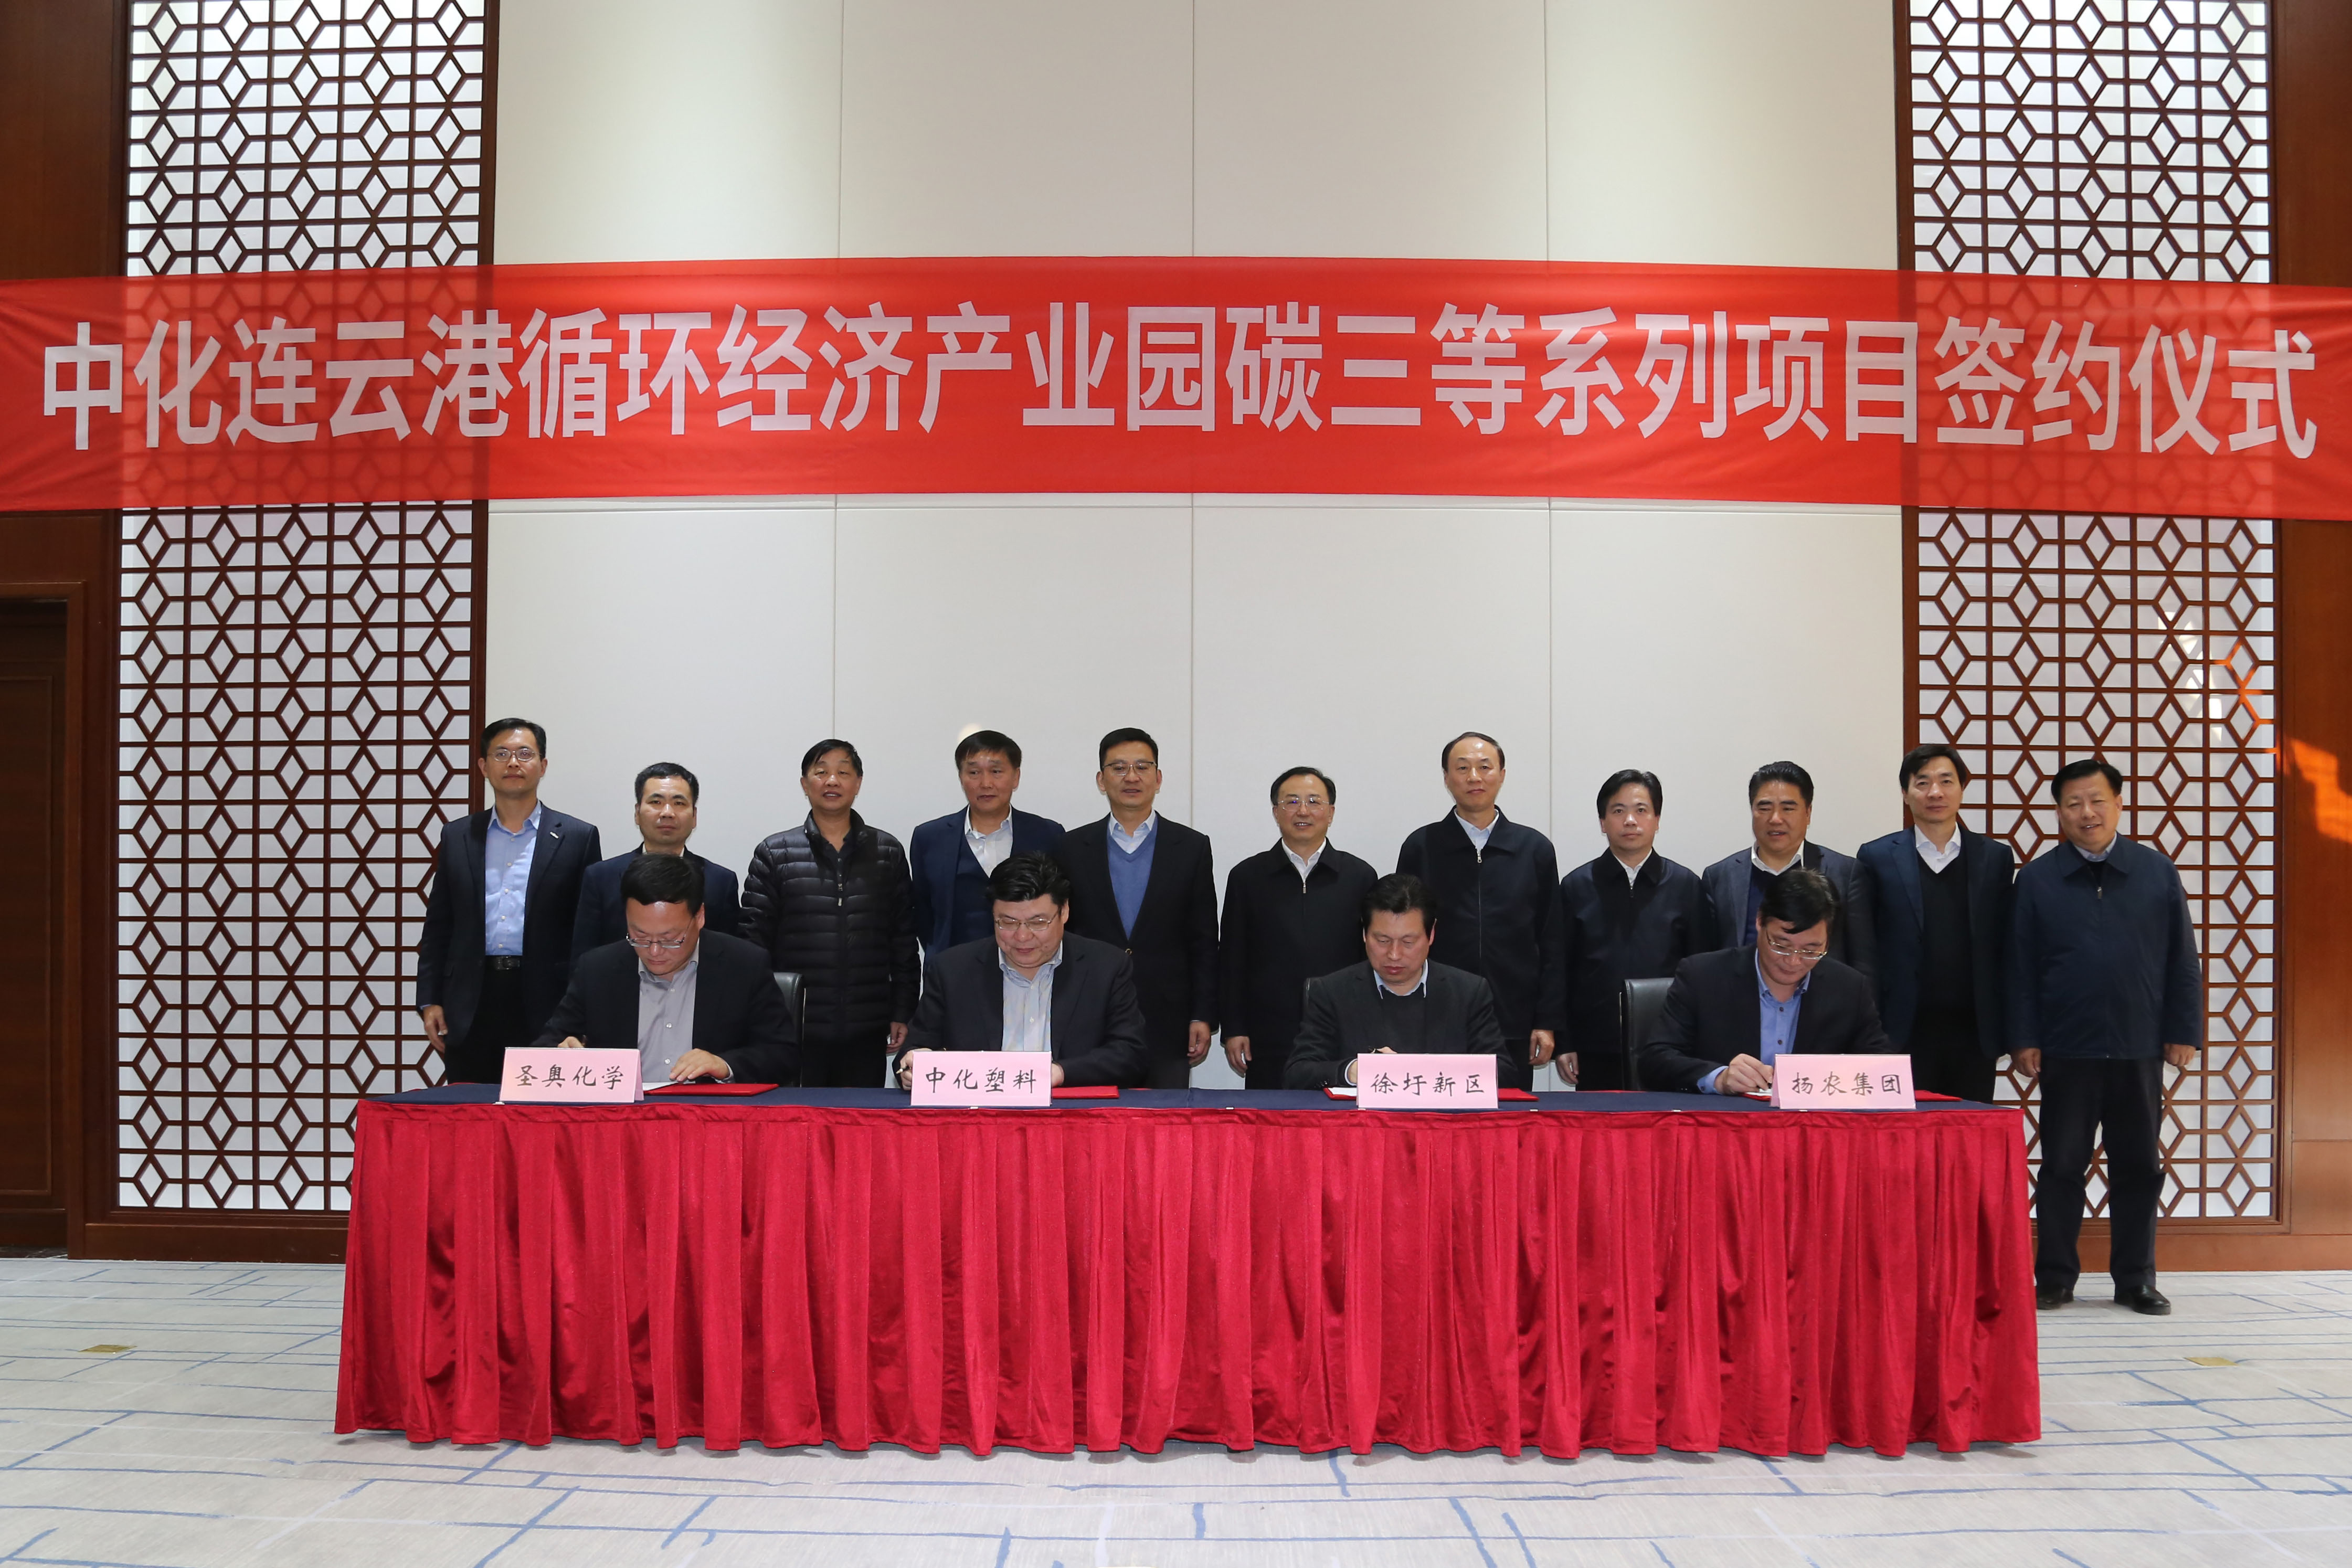 张伟总裁出席江苏省重大项目推进会暨圣奥聚合物添加剂等项目签约仪式 